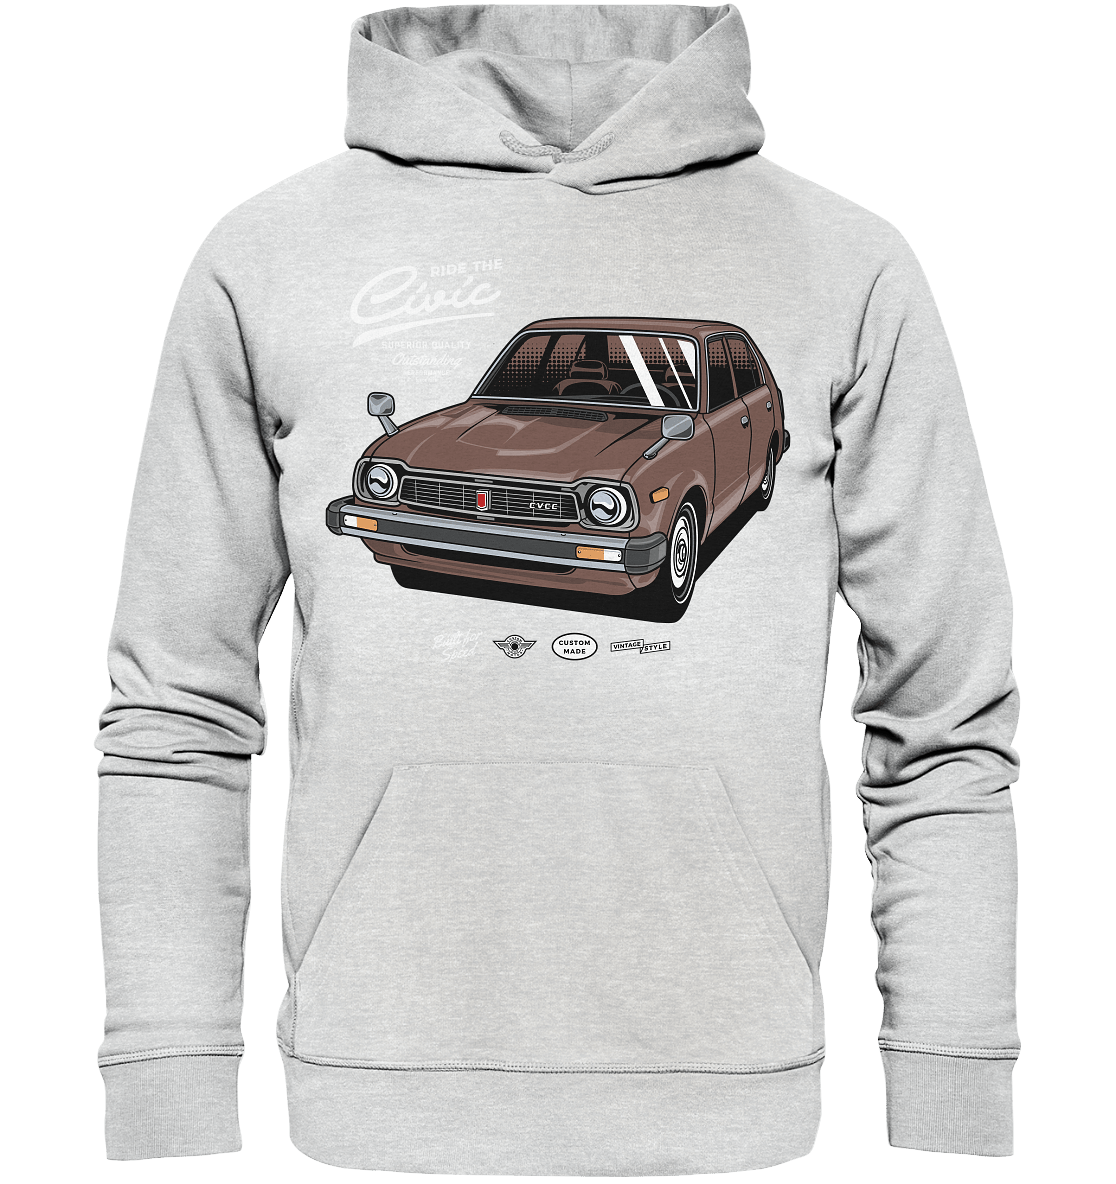 Honda Civic 1972 - Premium Unisex Hoodie - MotoMerch.de